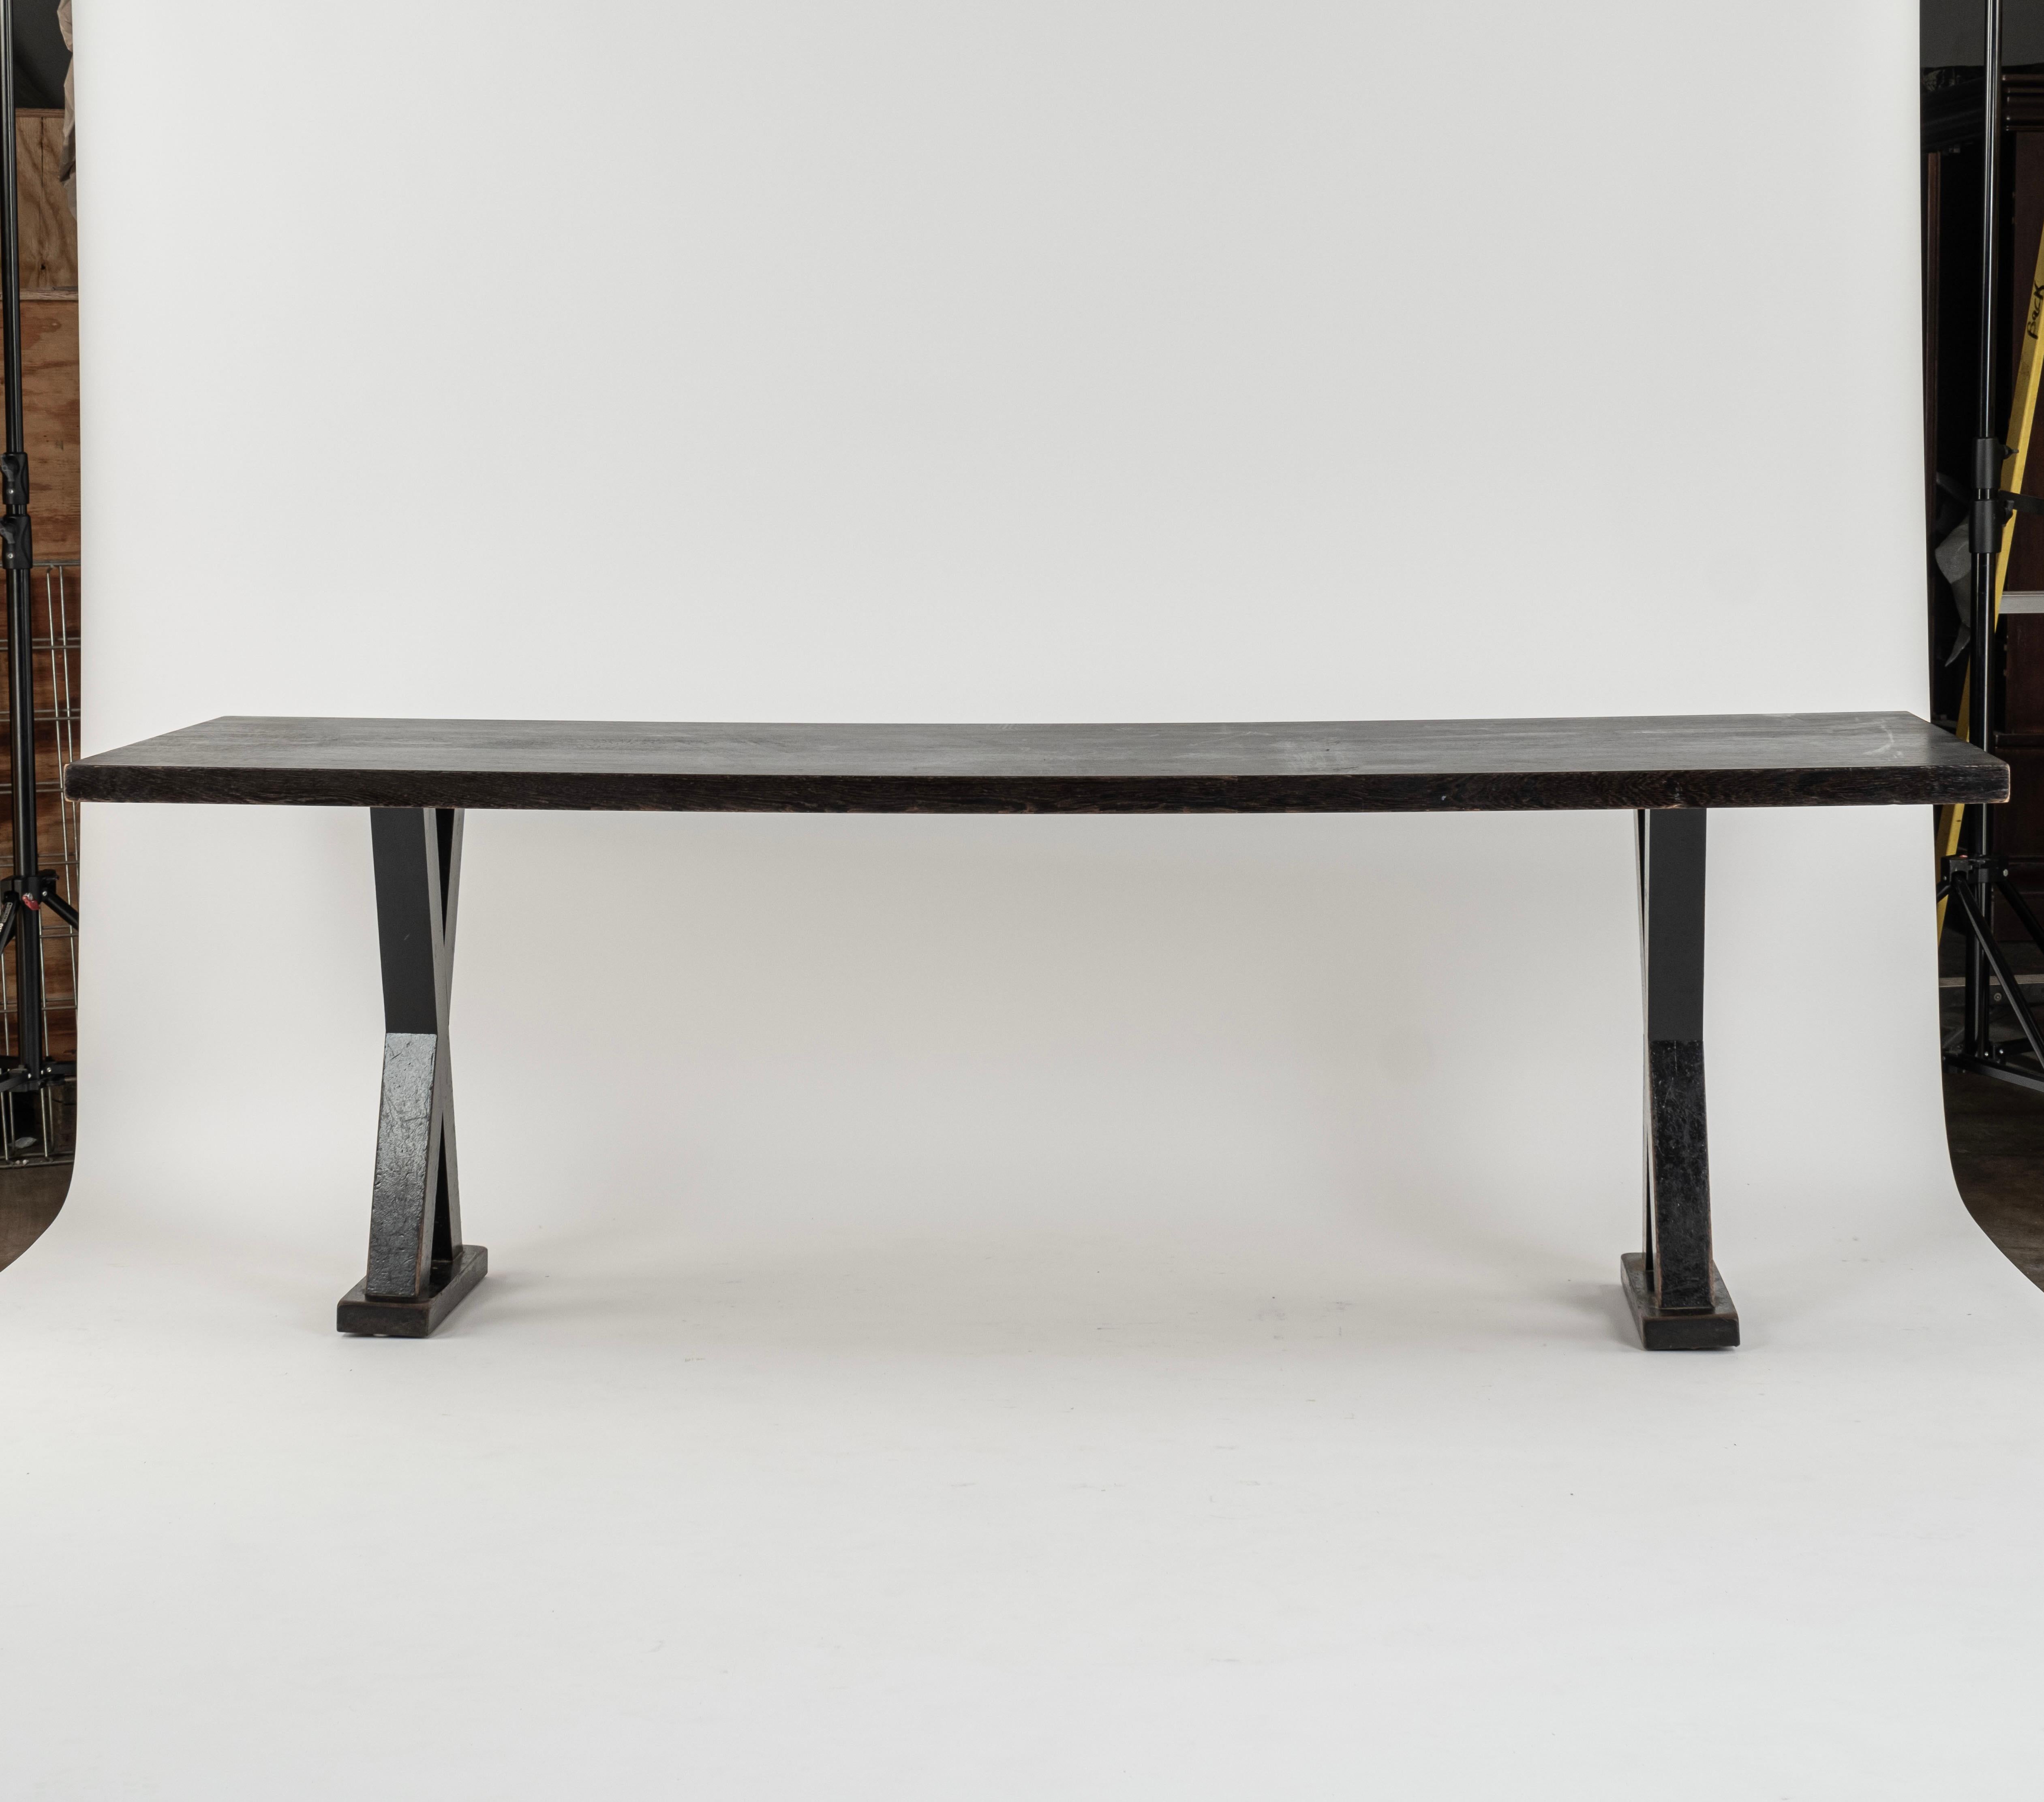 Inspiriert von Christian Liaigre (Franzose, 1943-2020) Mercer Kitchen (Entwurf 1997), langer Esstisch in rechteckiger Form mit x-förmigen Stützen, die auf Sockeln ruhen. 28,5